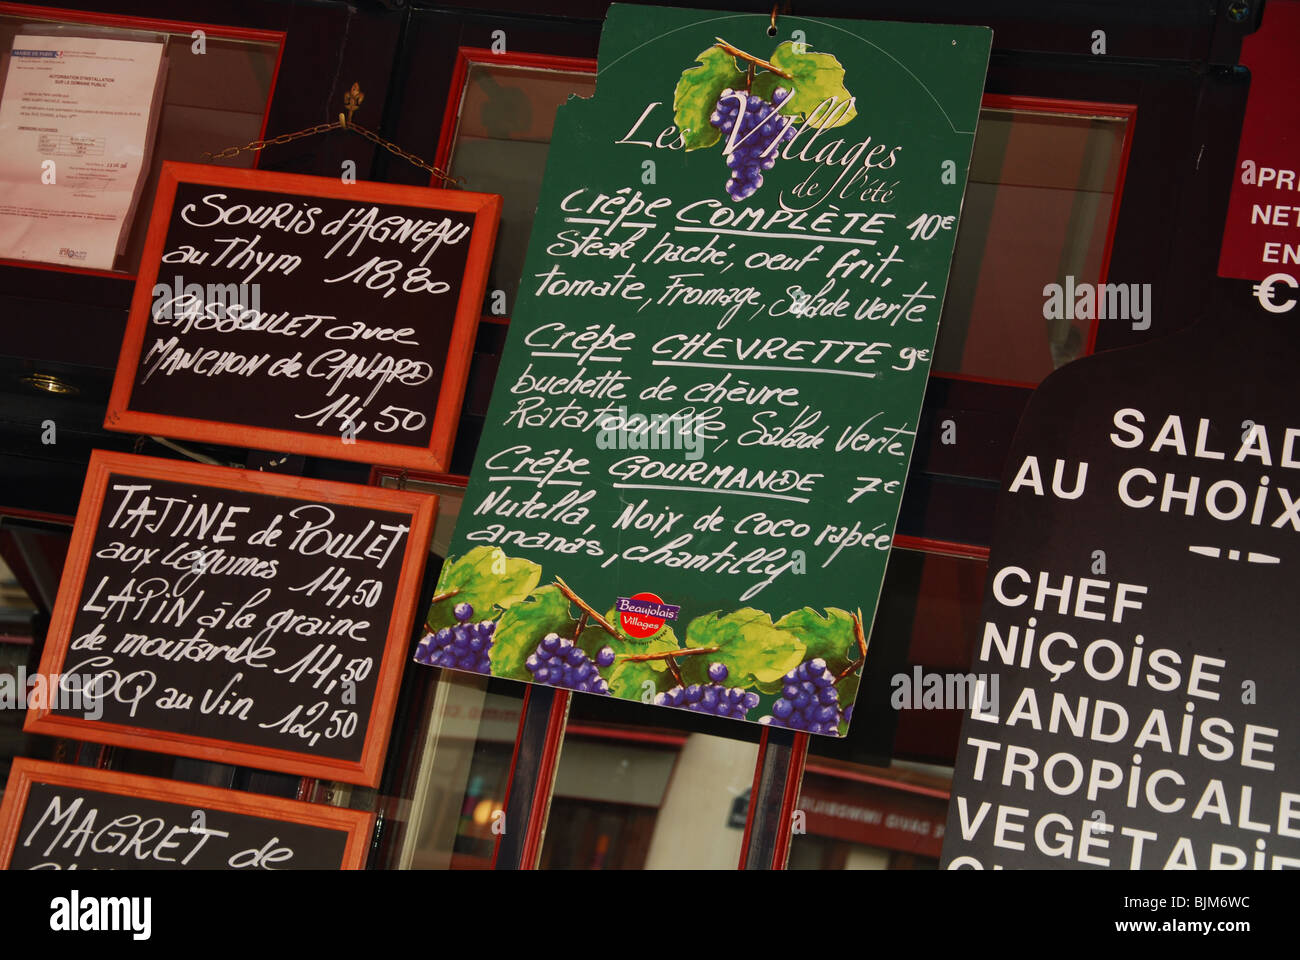 menu at Parisian restaurant Montmartre Paris France Stock Photo